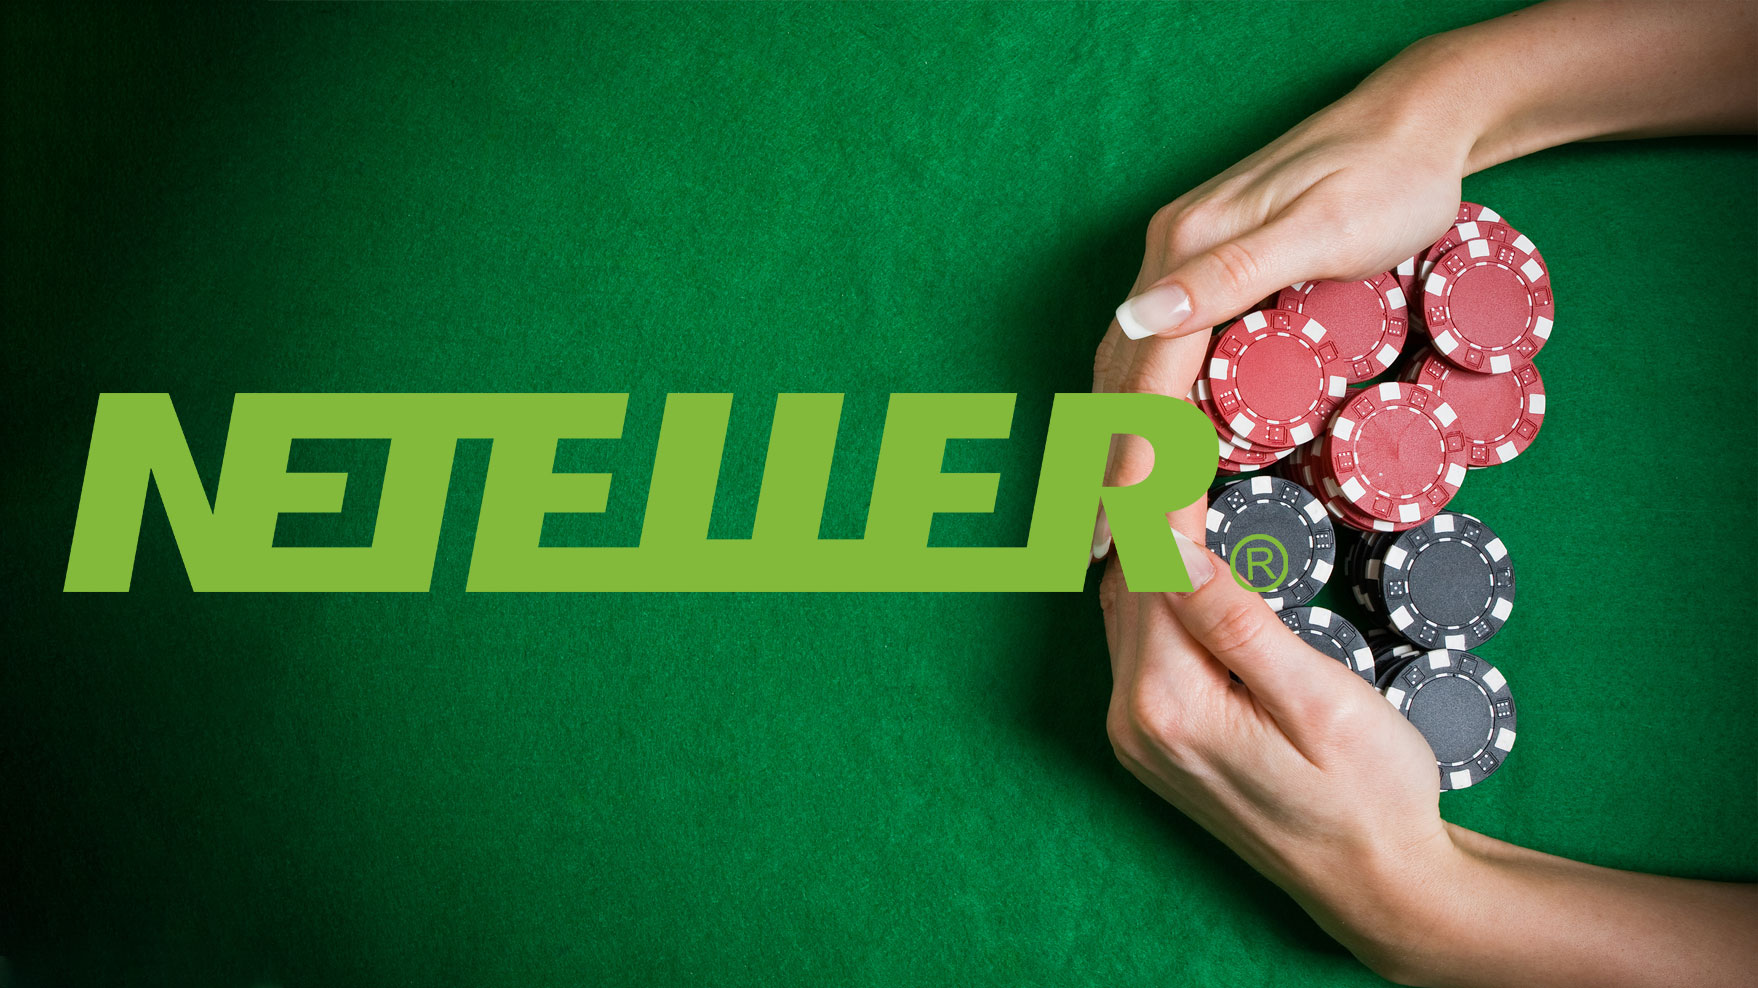 Neteller Poker Sites